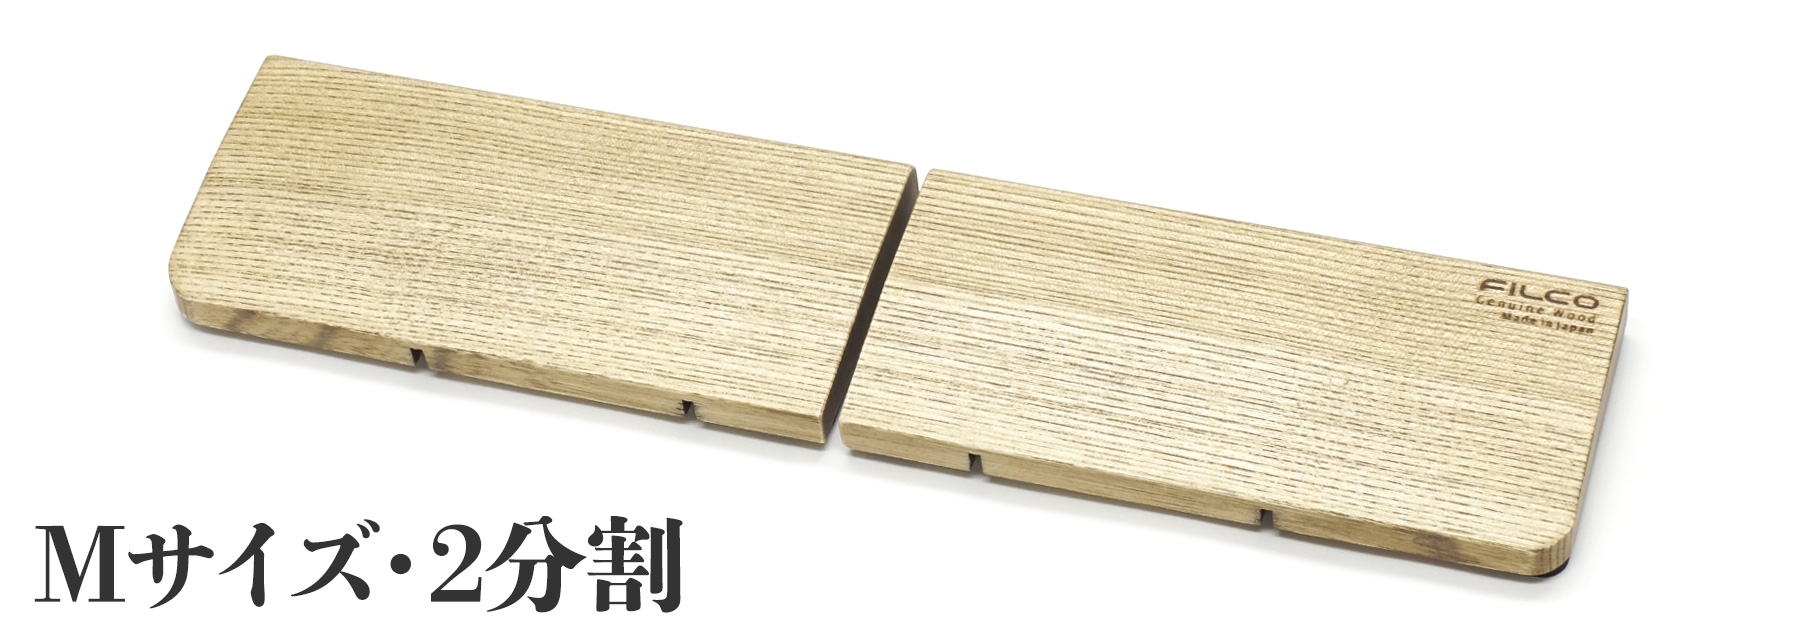 【通販限定】【北海道産天然木】FILCO Genuine Wood Wrist Rest Ｍ size 分離型(2分割)